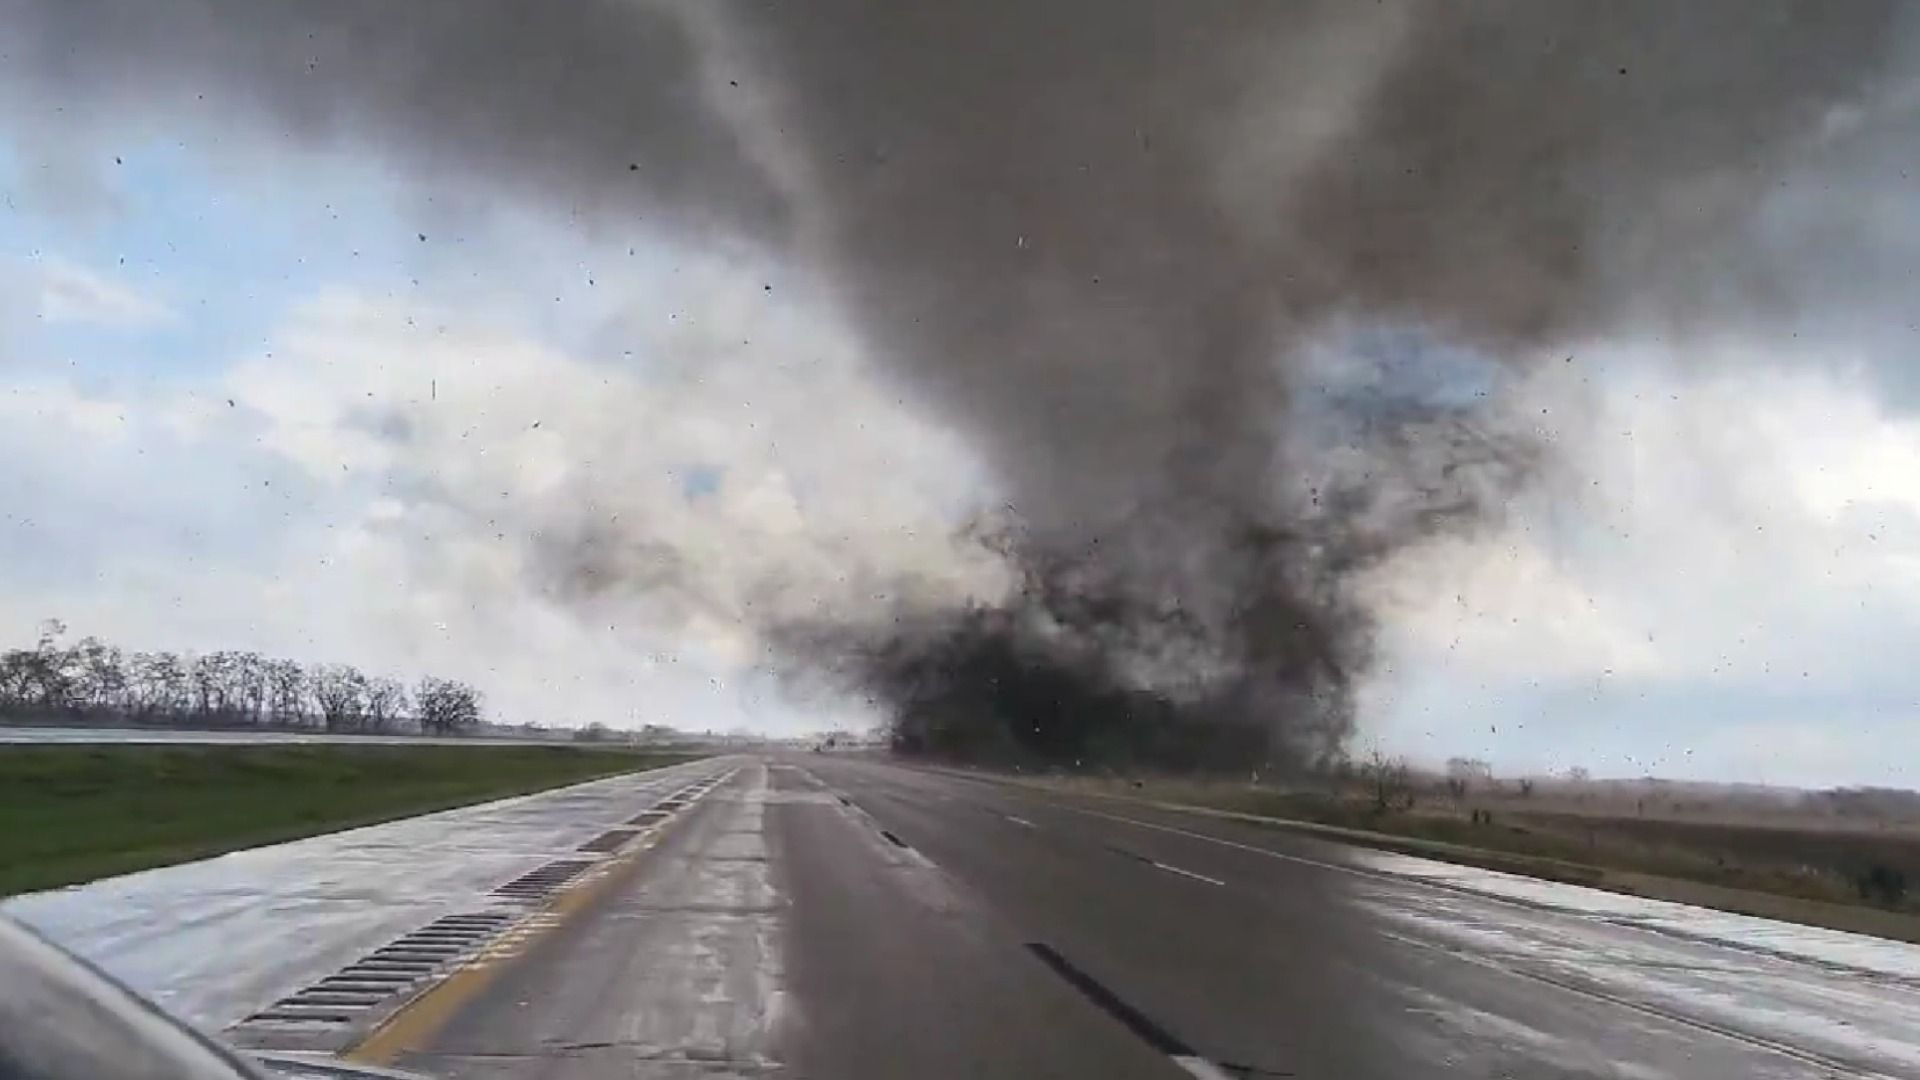 Un testigo grabó los estragos que dejó este tornado en el aeródromo de Omaha. Piezas de aviones quedaron esparcidas en la pista  